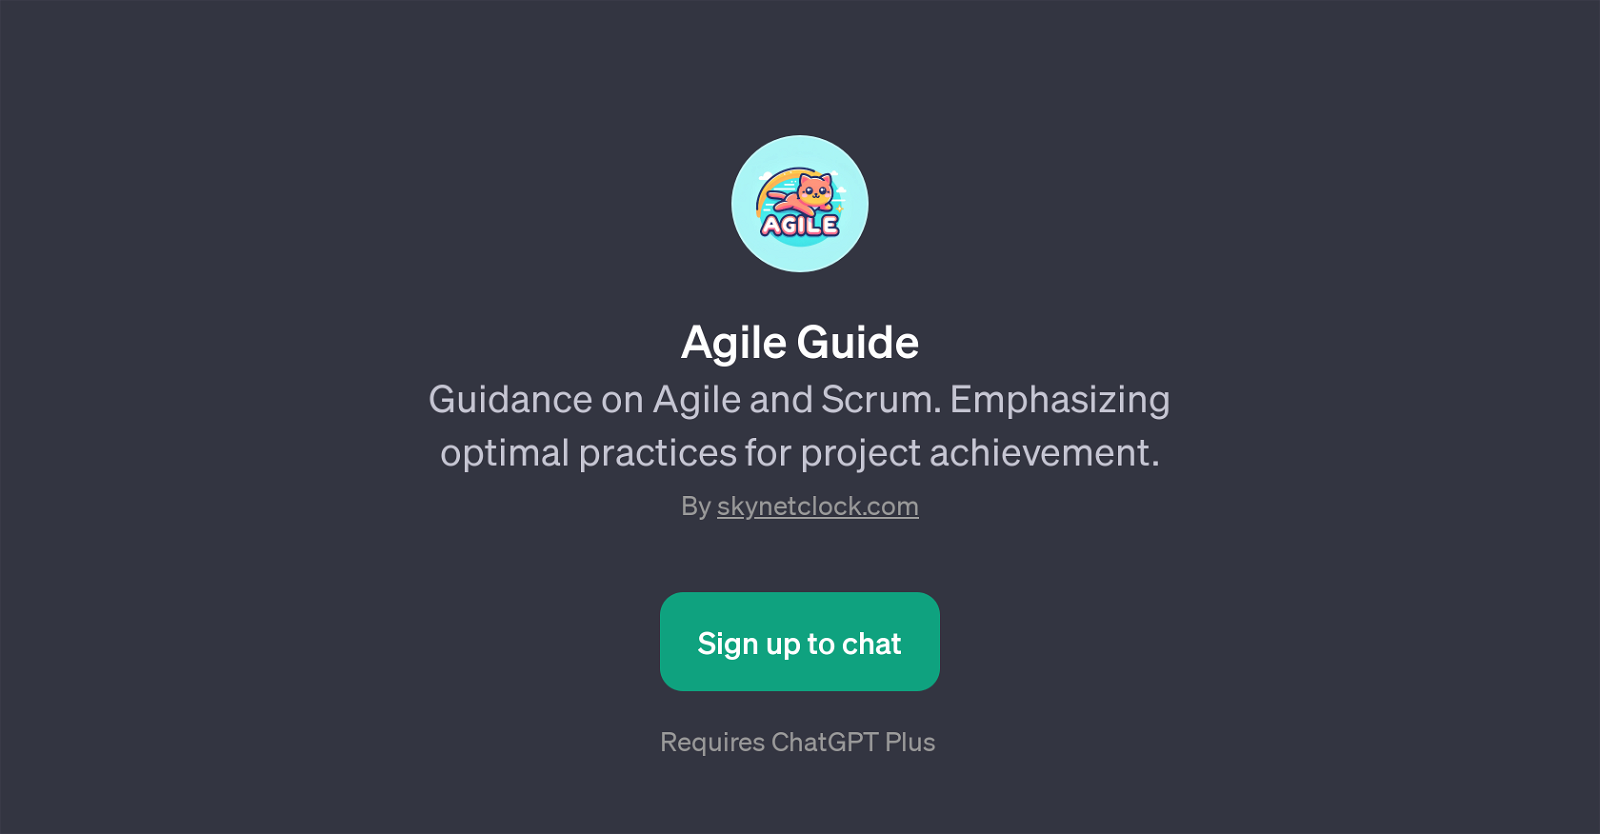 Agile Guide website